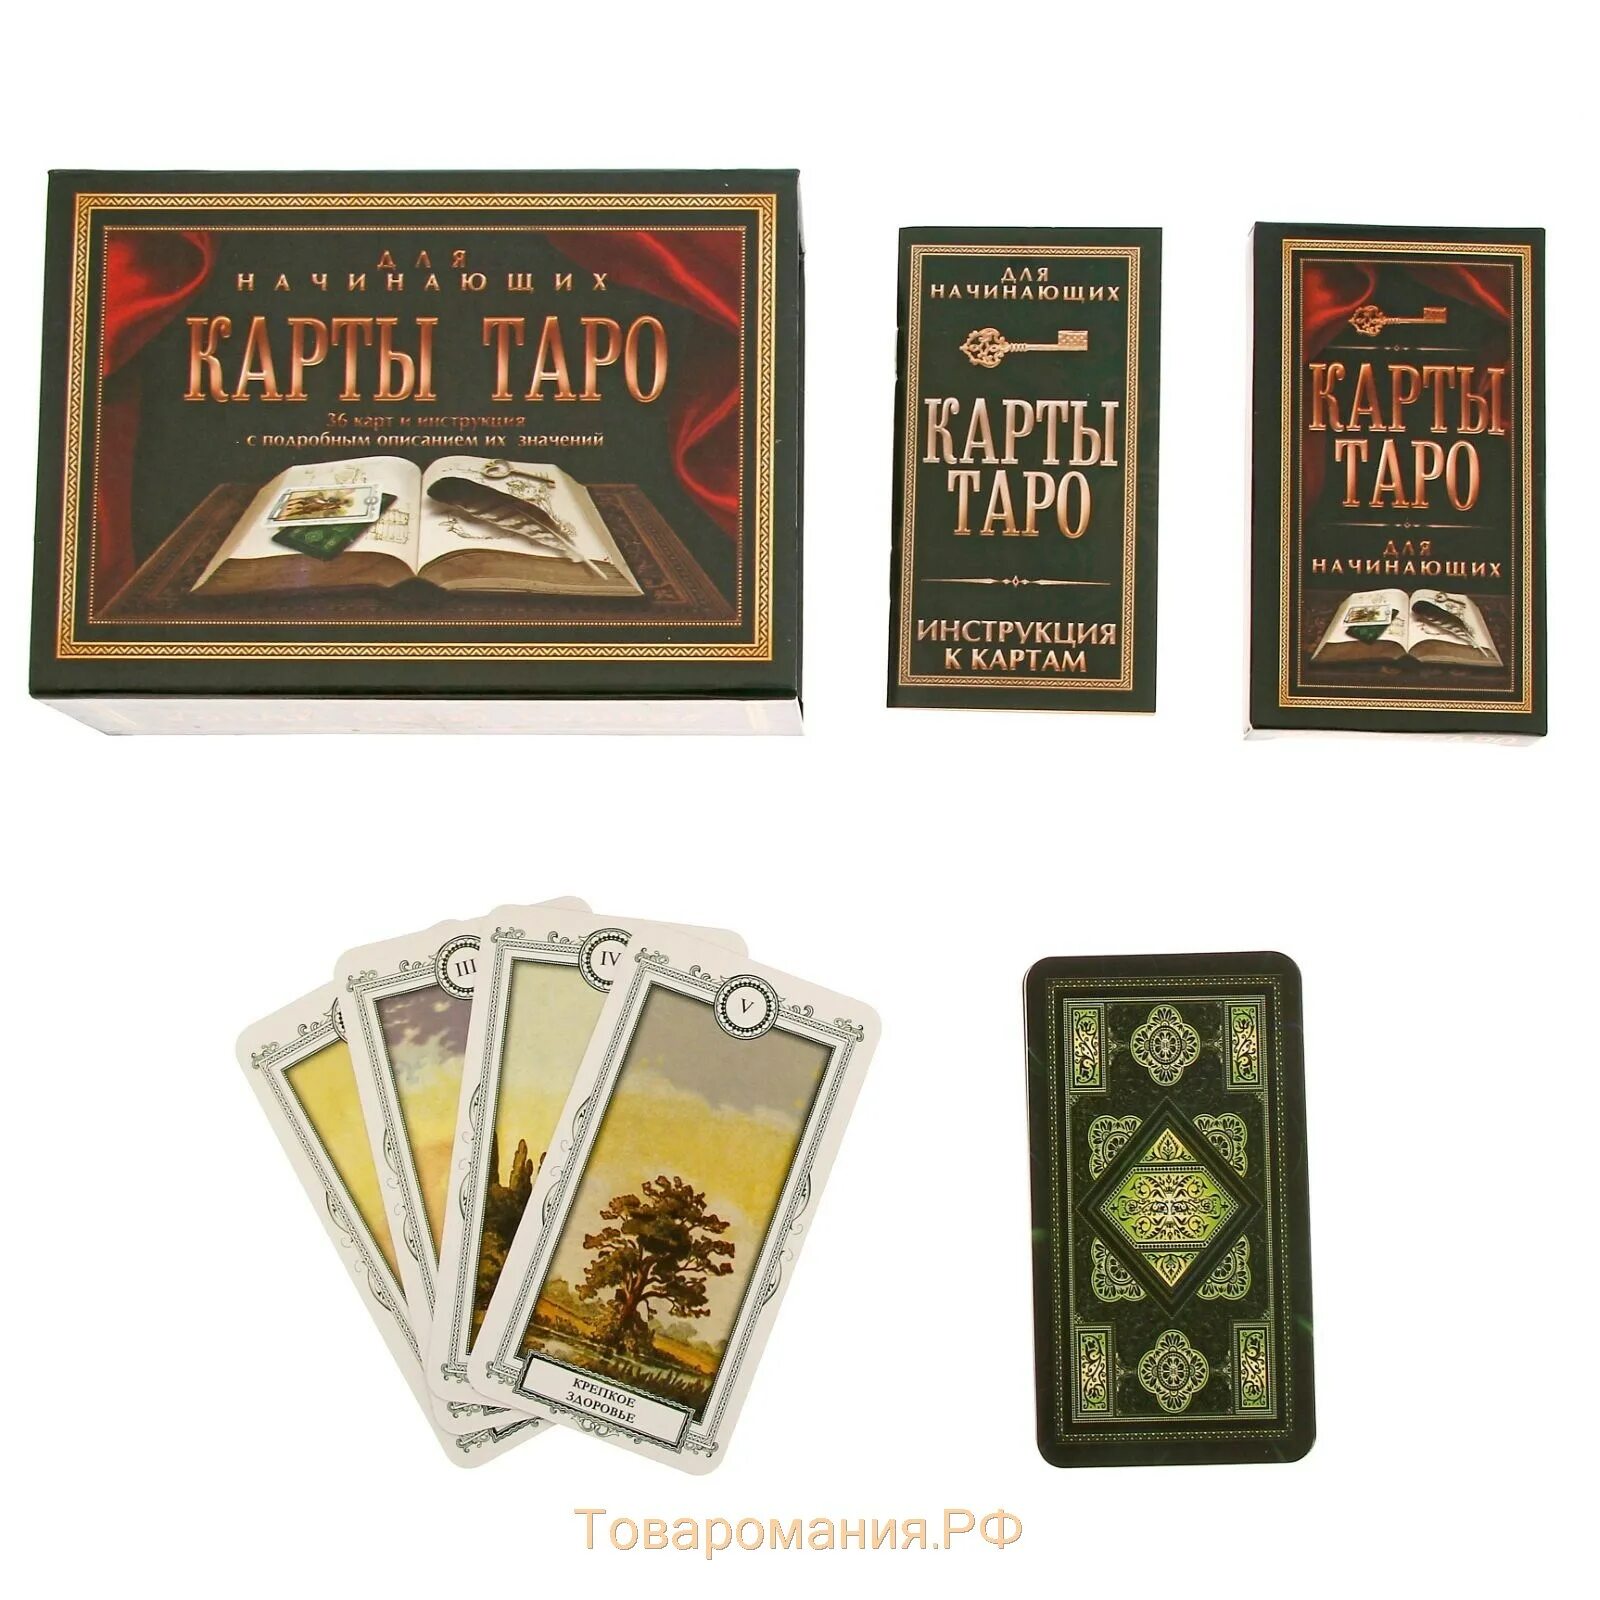 Купить книгу таро для начинающих. Карты Таро "для начинающих". Карты Таро упаковка. Карты Таро в подарочной упаковке. Карты Таро для новичков.